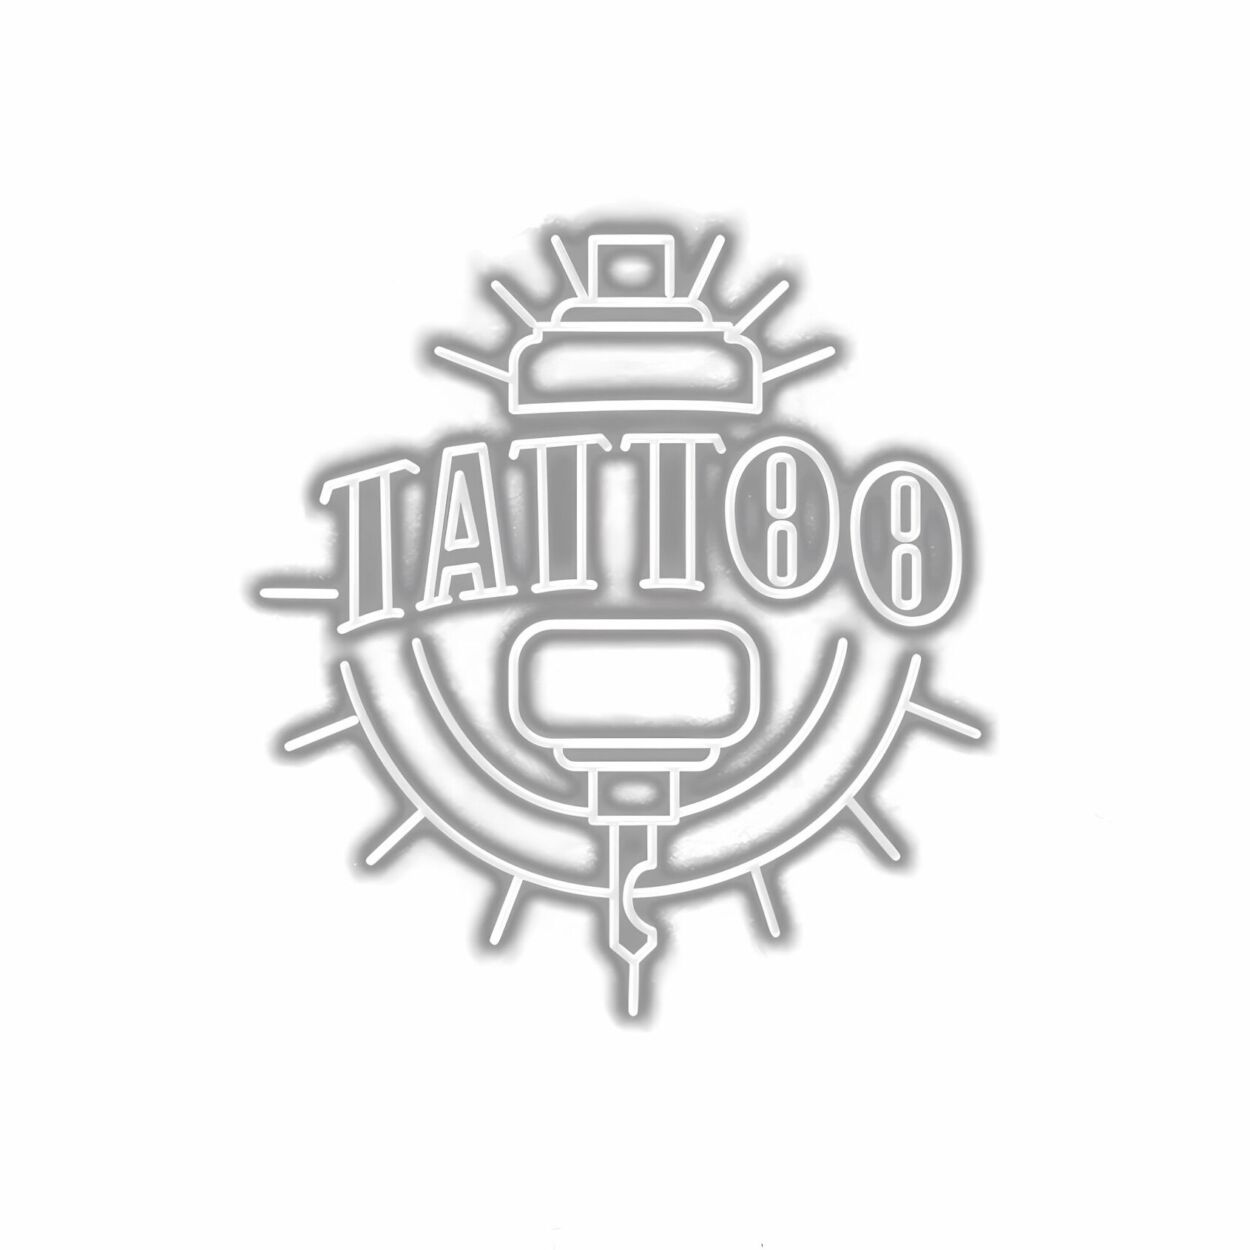 Stylized tattoo machine logo with text "Tattoo 88